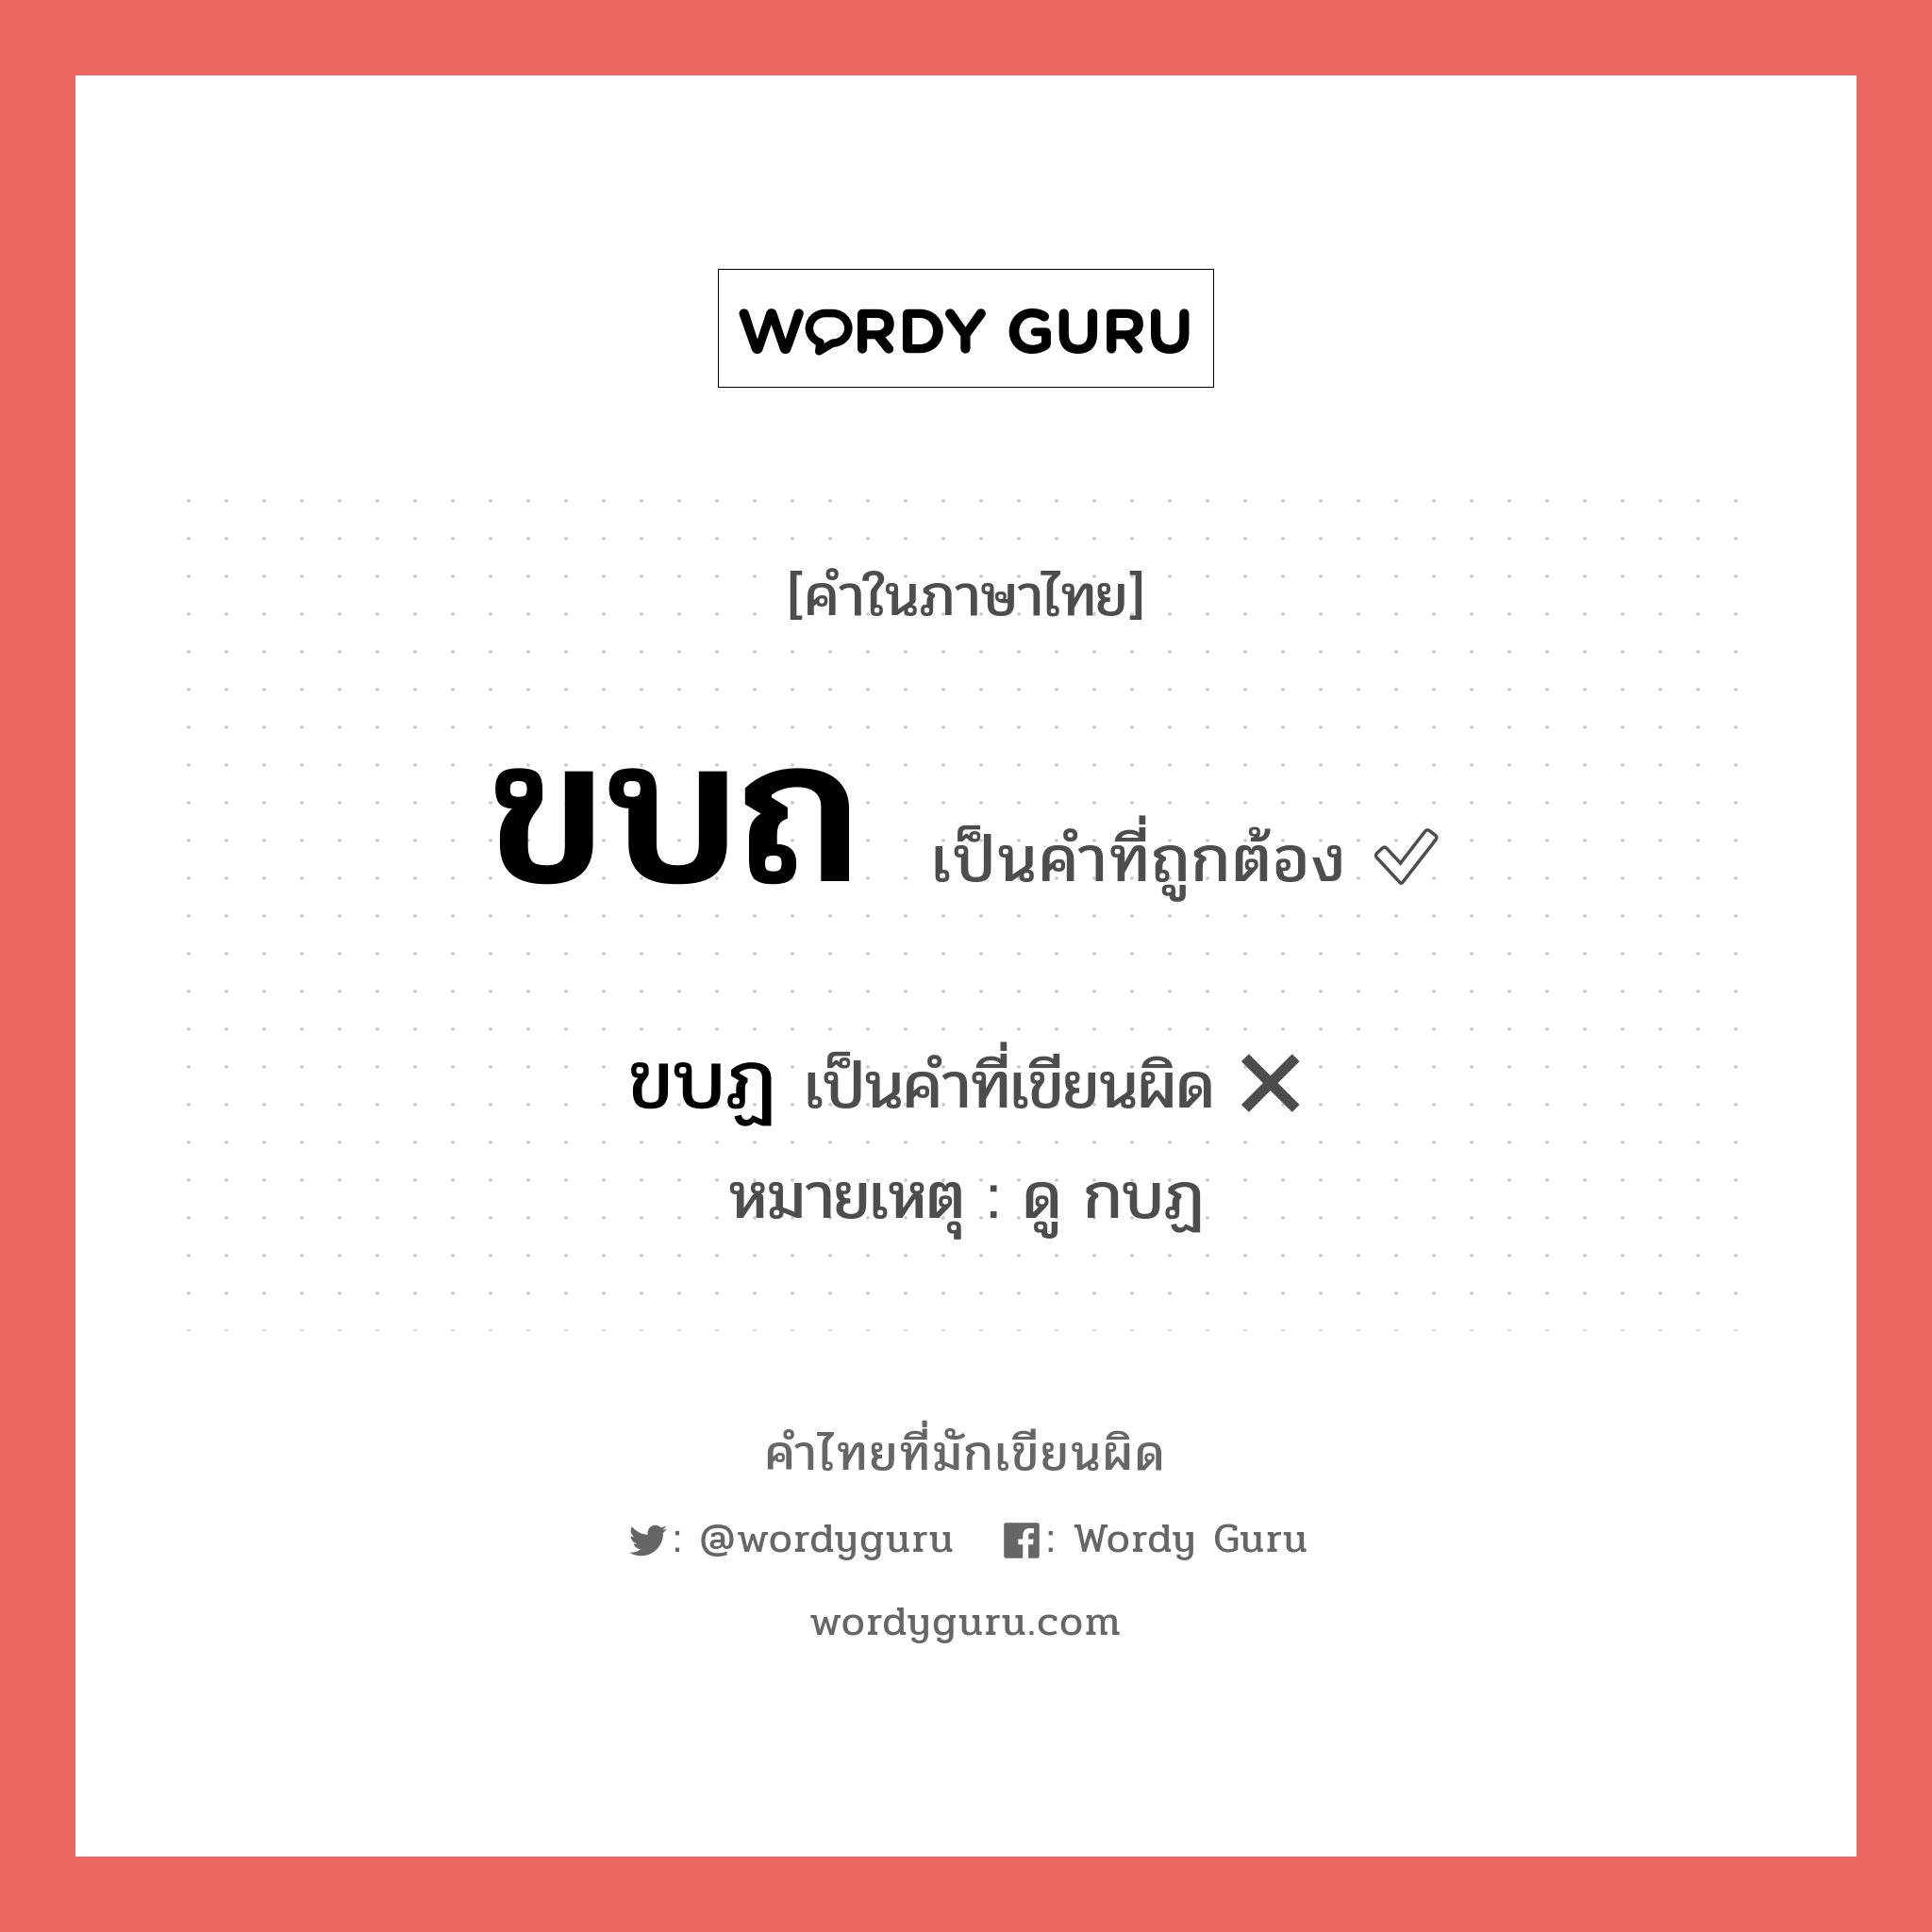 ขบฏ หรือ ขบถ คำไหนเขียนถูก?, คำในภาษาไทยที่มักเขียนผิด ขบฏ คำที่ผิด ❌ ขบถ หมายเหตุ ดู กบฏ